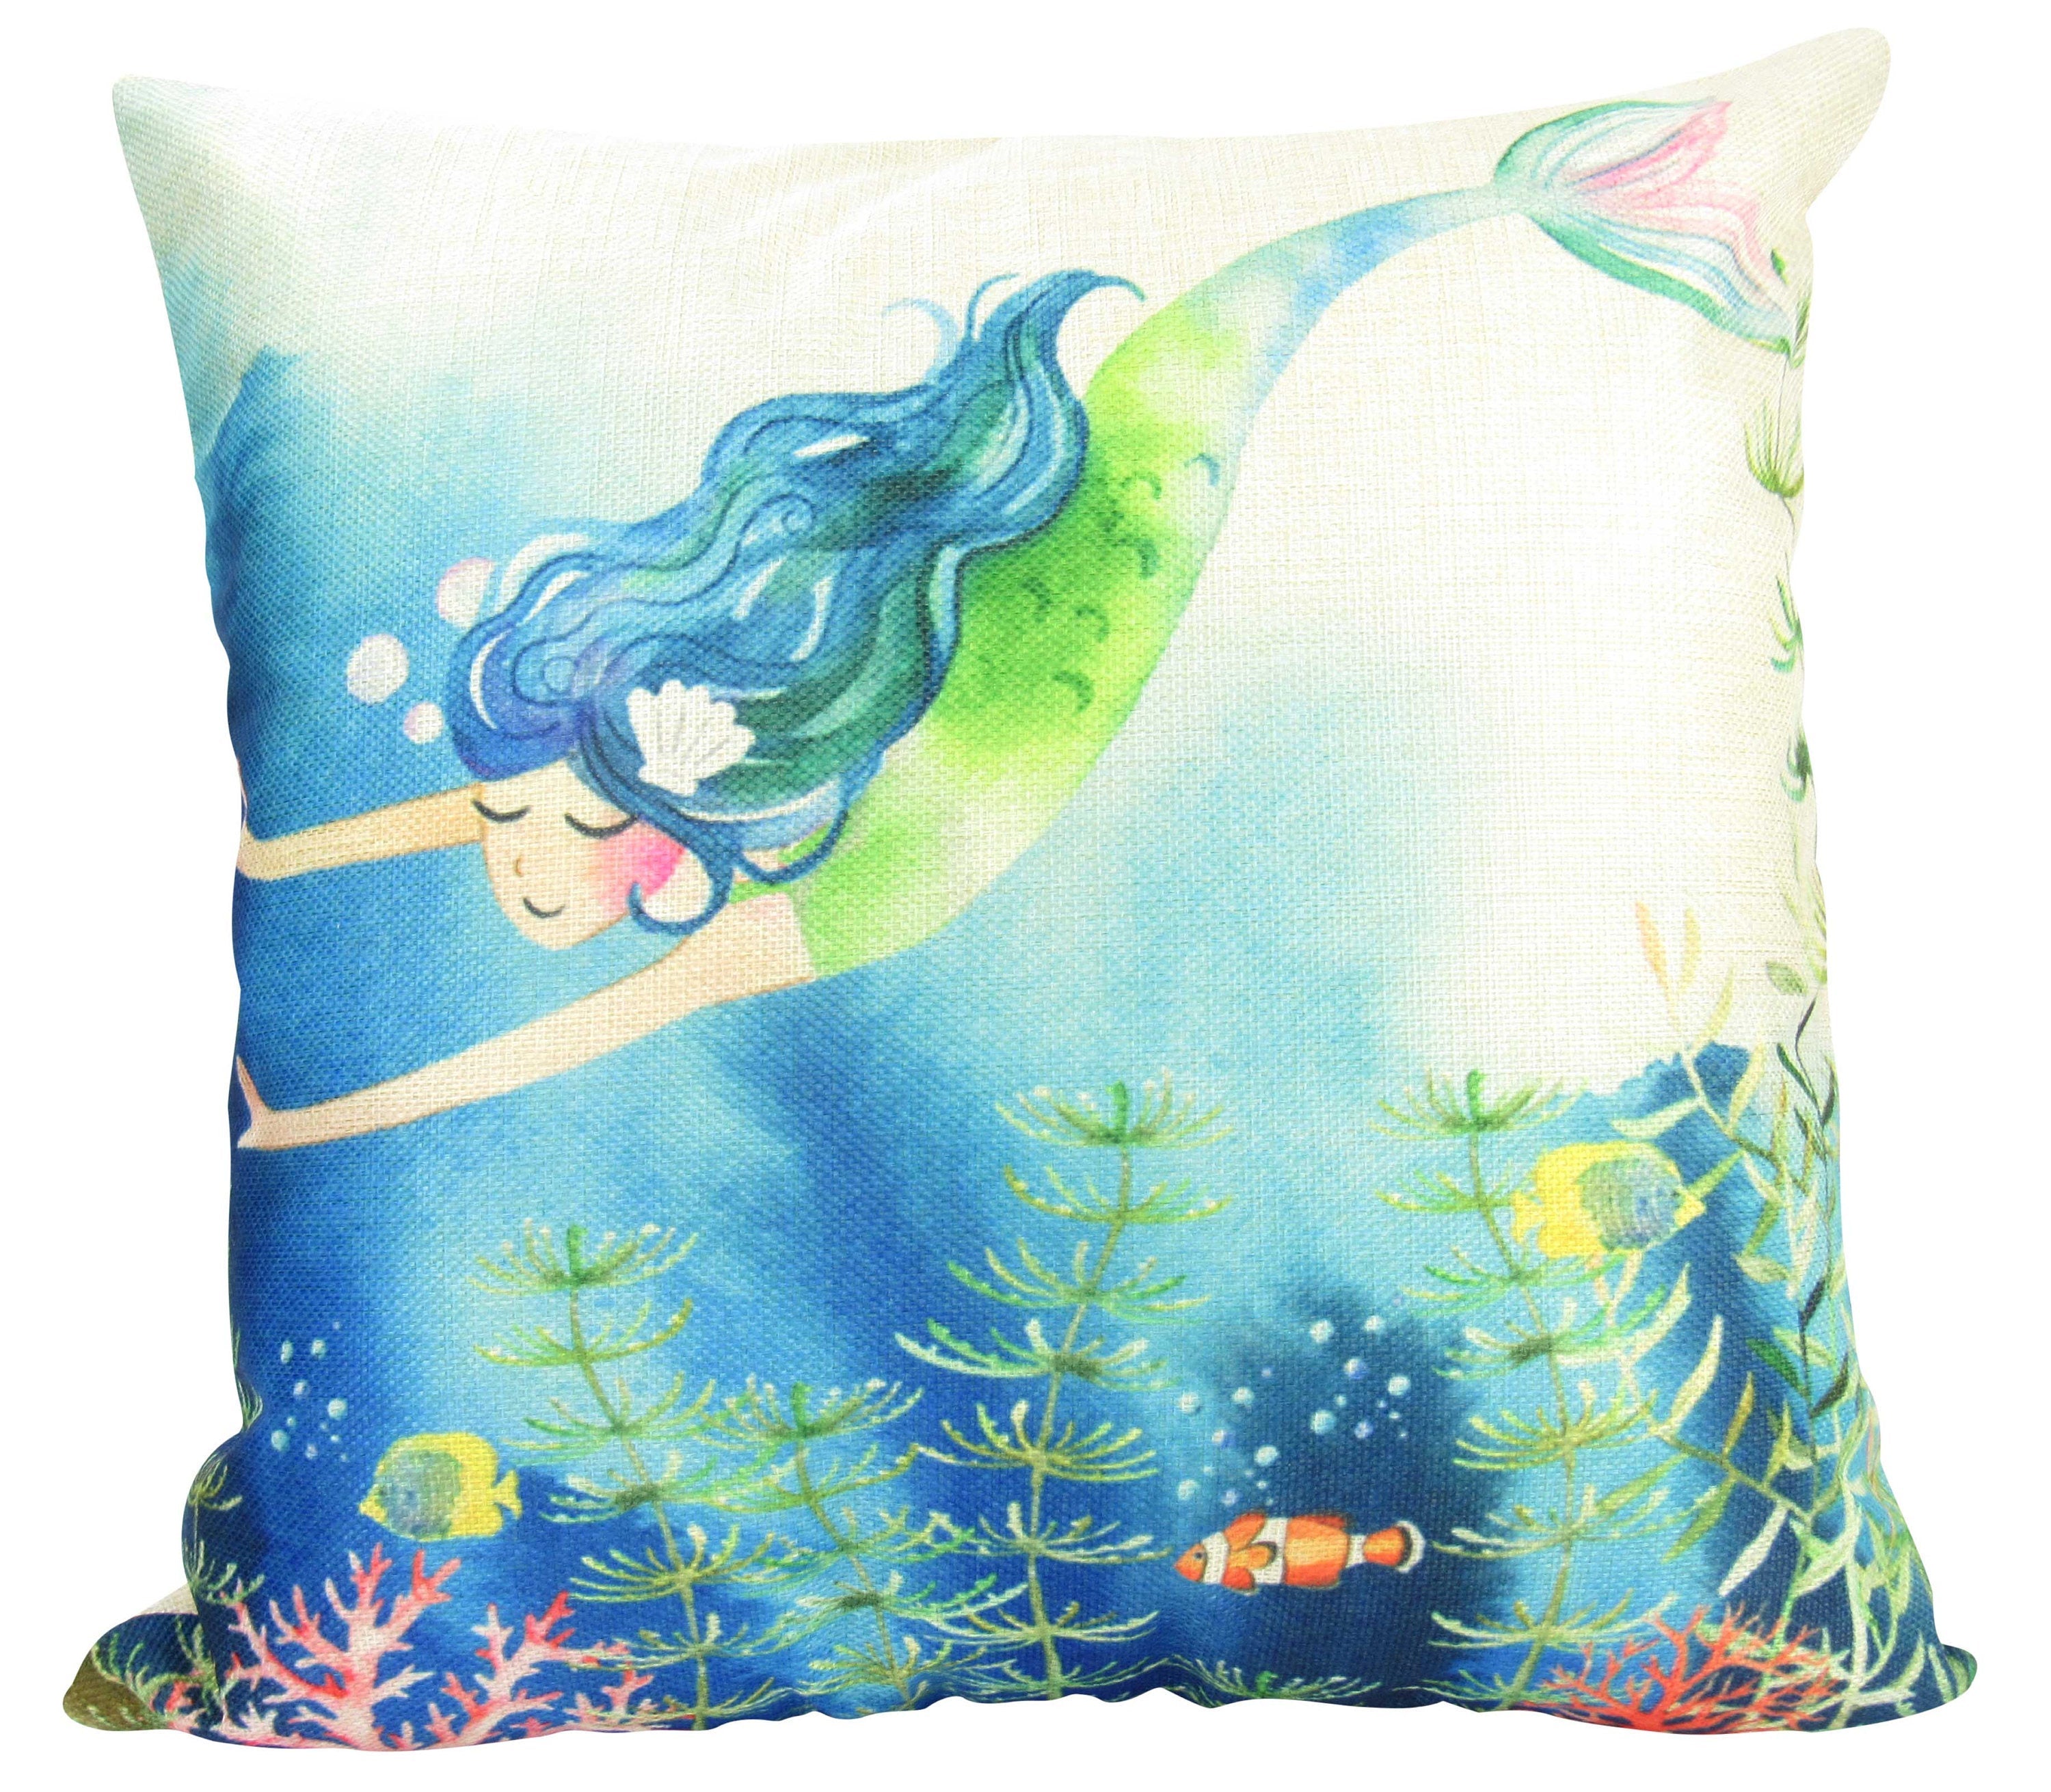 Mermaid Art | Mermaid | Fun Gifts | Pillow Cover | Home Decor | Throw